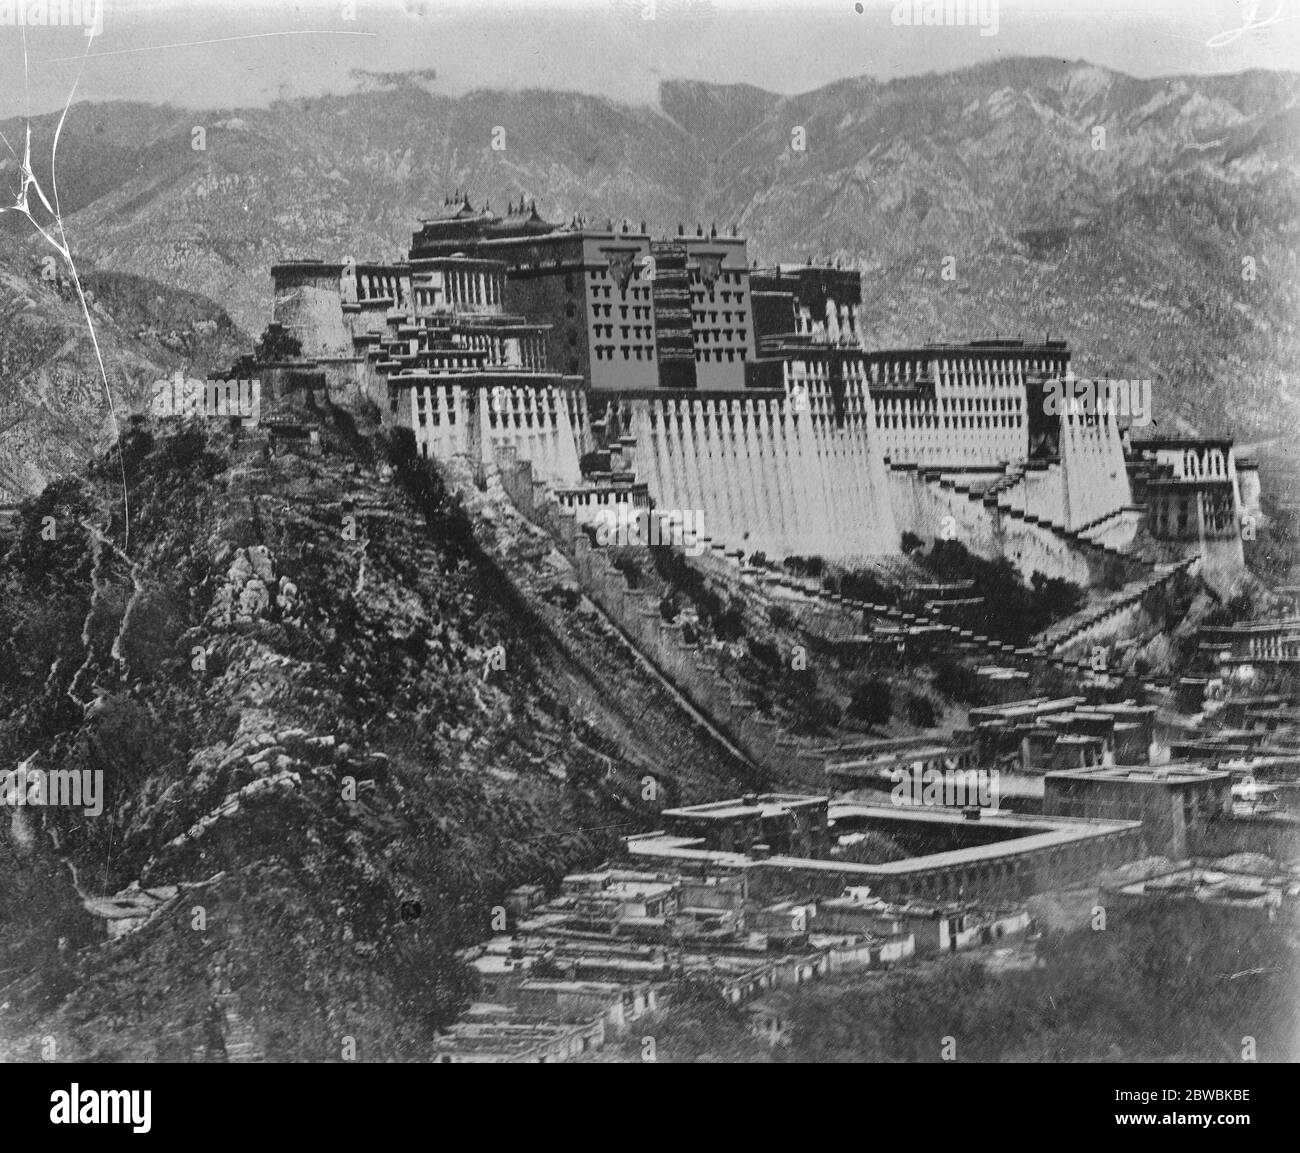 Missione buddista britannica in Tibet . Lhasa , la capitale del Tibet , che deve essere visitata da una Missione Buddista britannica , significa letteralmente ' terra di Dio' . Dopo il 1760 l' accesso alla capitale fu proibito agli europei , anche se alcuni eludevano la restrizione . Una visione generale di Lhasa, che mostra la sede del governo nella ' Città Proibita'. 15 luglio 1922 Foto Stock